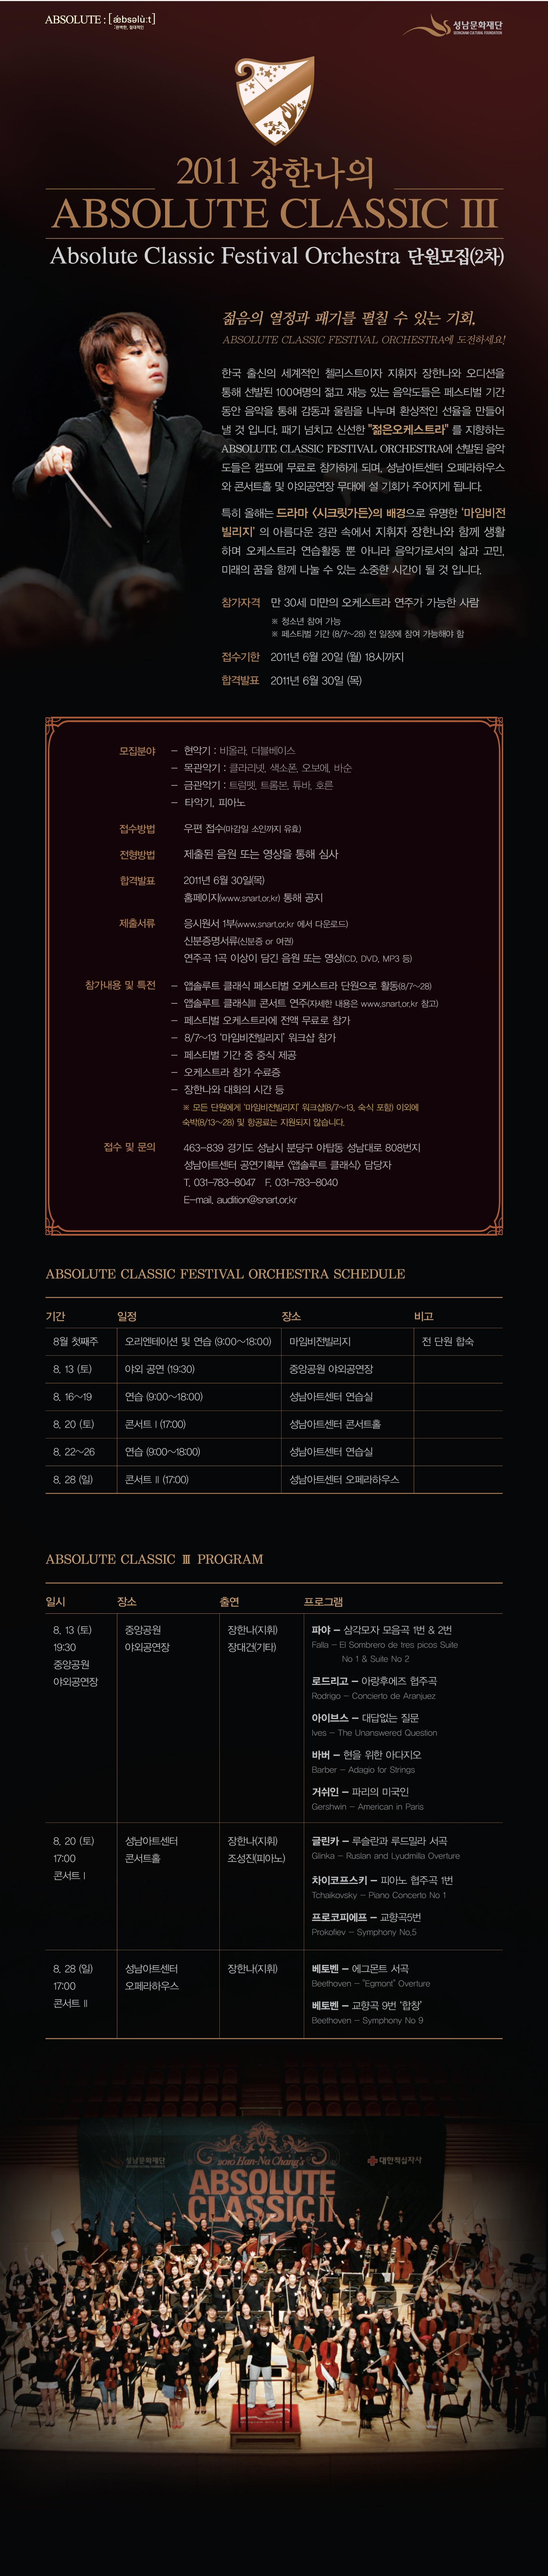 장한나 & ABSOLUTE CLASSIC 페스티벌 오케스트라 단원 모집(2차) 참가자격 만30세 미만의 오케스트라 연주가능자 접수기한:2011.6.20 18시까지 합격발표:2011.6.30